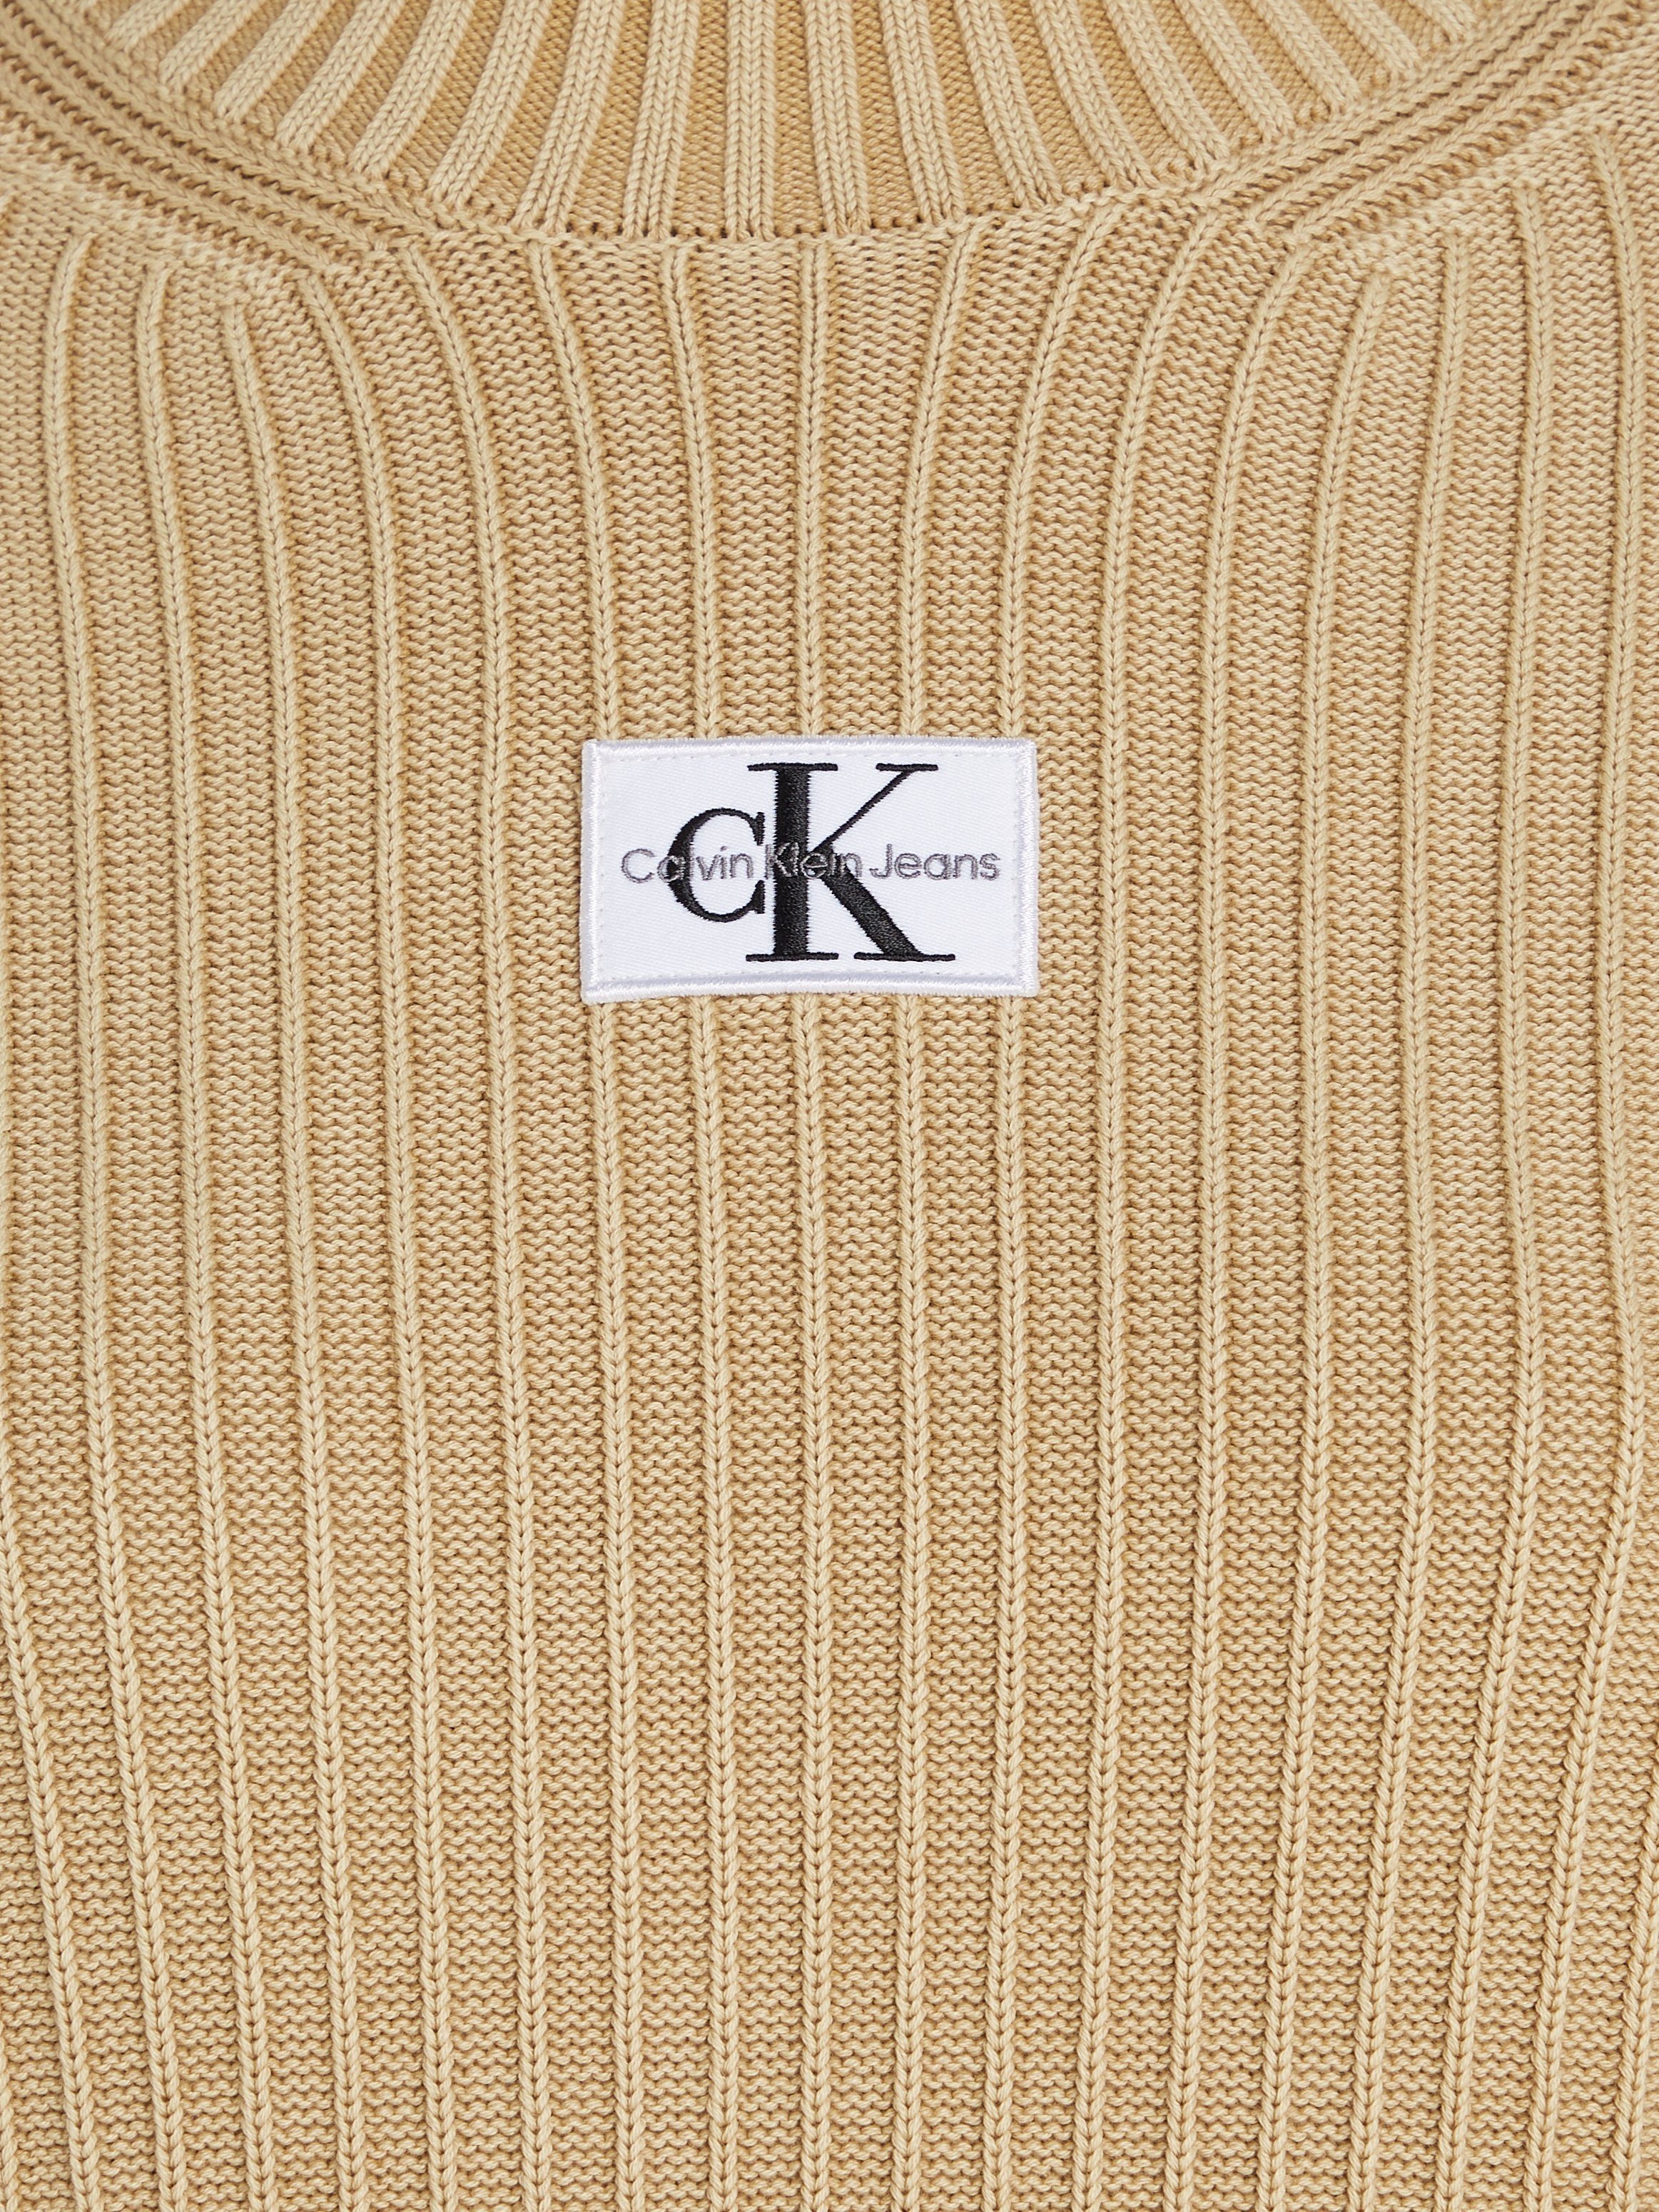 Calvin Klein Jeans Strickkleid WASHED MONOLOGO Sand Warm DRESS SWEATER